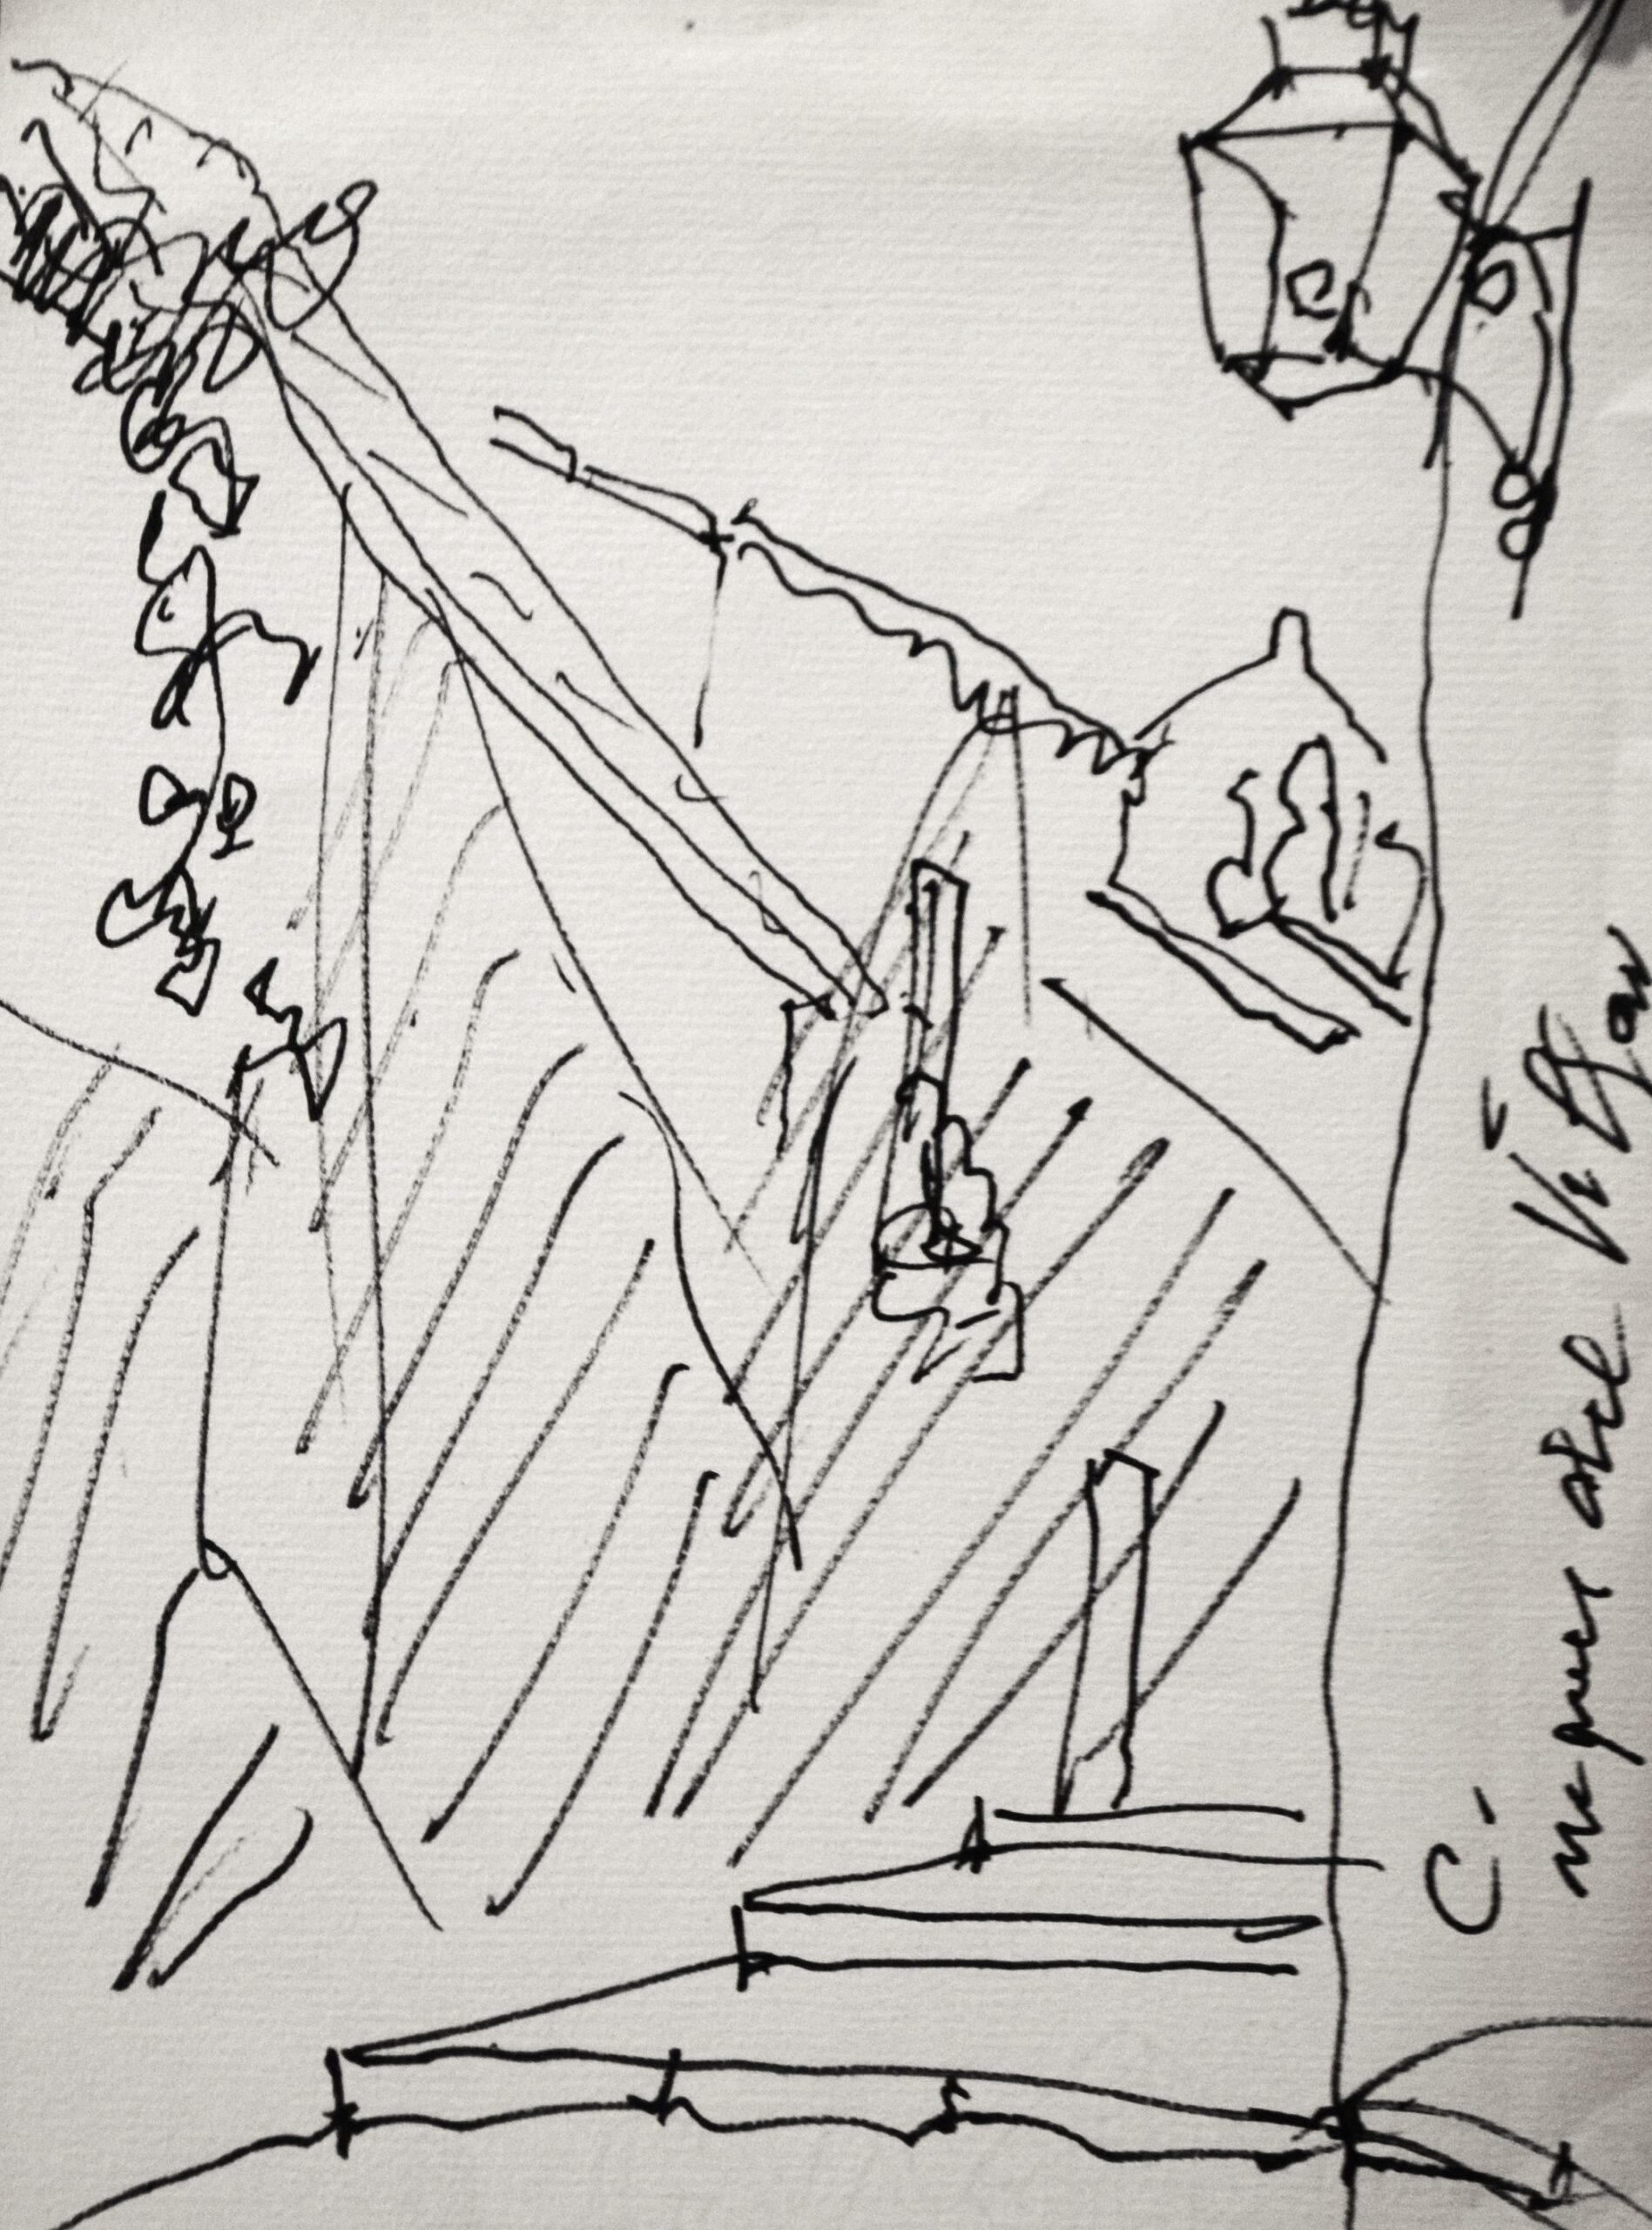 Dibujo de José Manaut titulado Calle marqués del Villán. Tinta sobre papel.